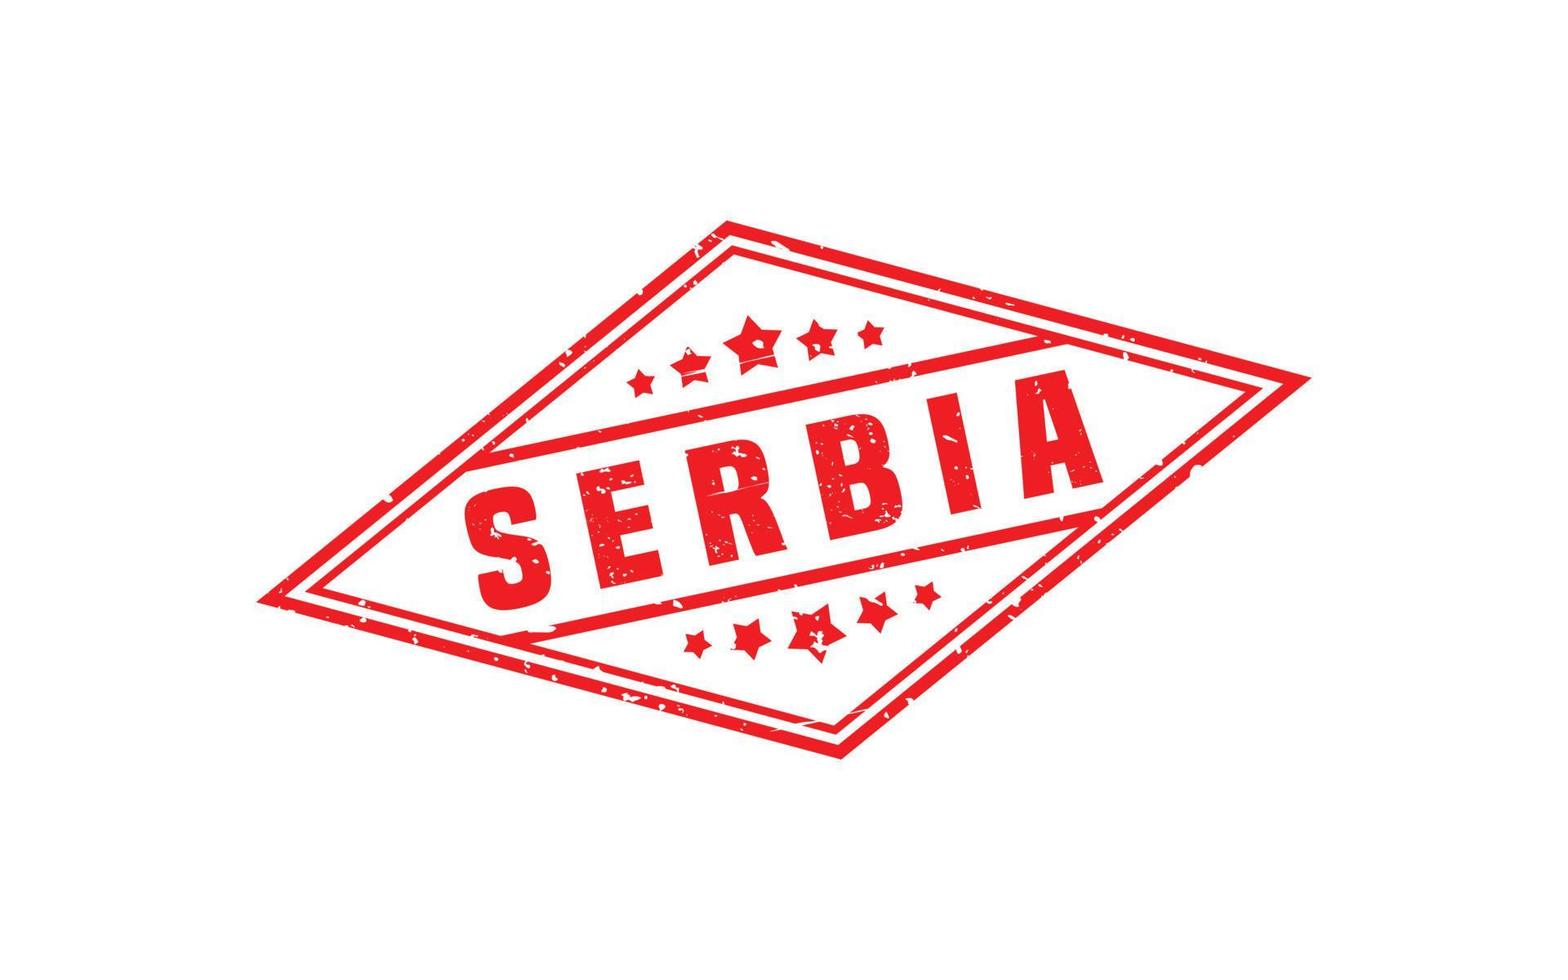 Sérvia carimbo borracha com grunge estilo em branco fundo vetor